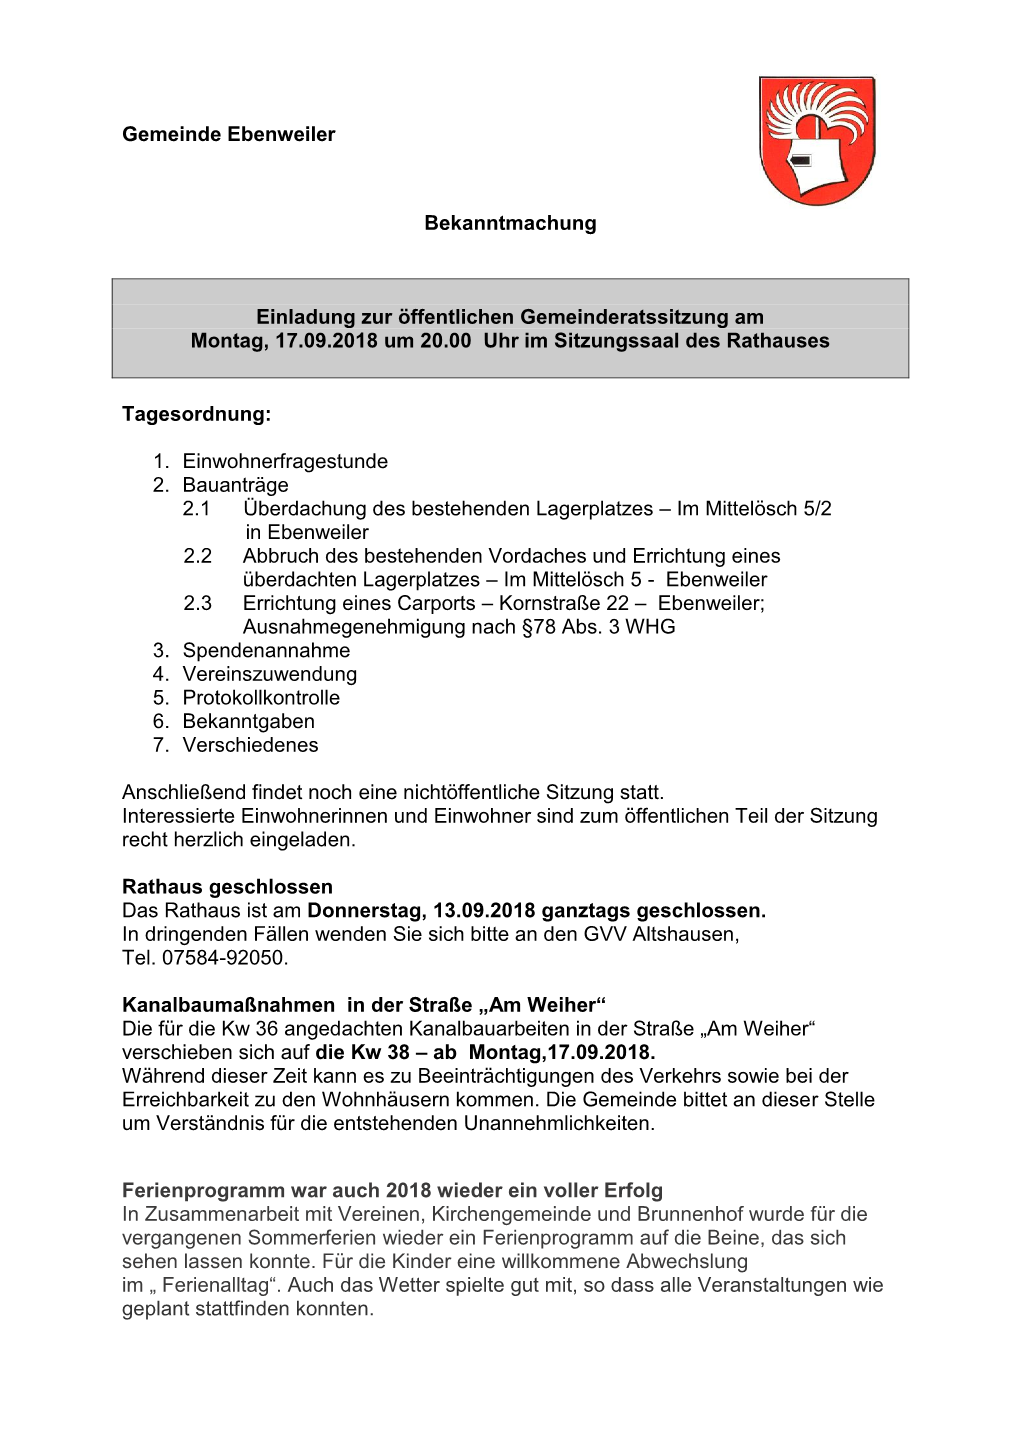 Gemeinde Ebenweiler Bekanntmachung Einladung Zur Öffentlichen Gemeinderatssitzung Am Montag, 17.09.2018 Um 20.00 Uhr Im Sitzu